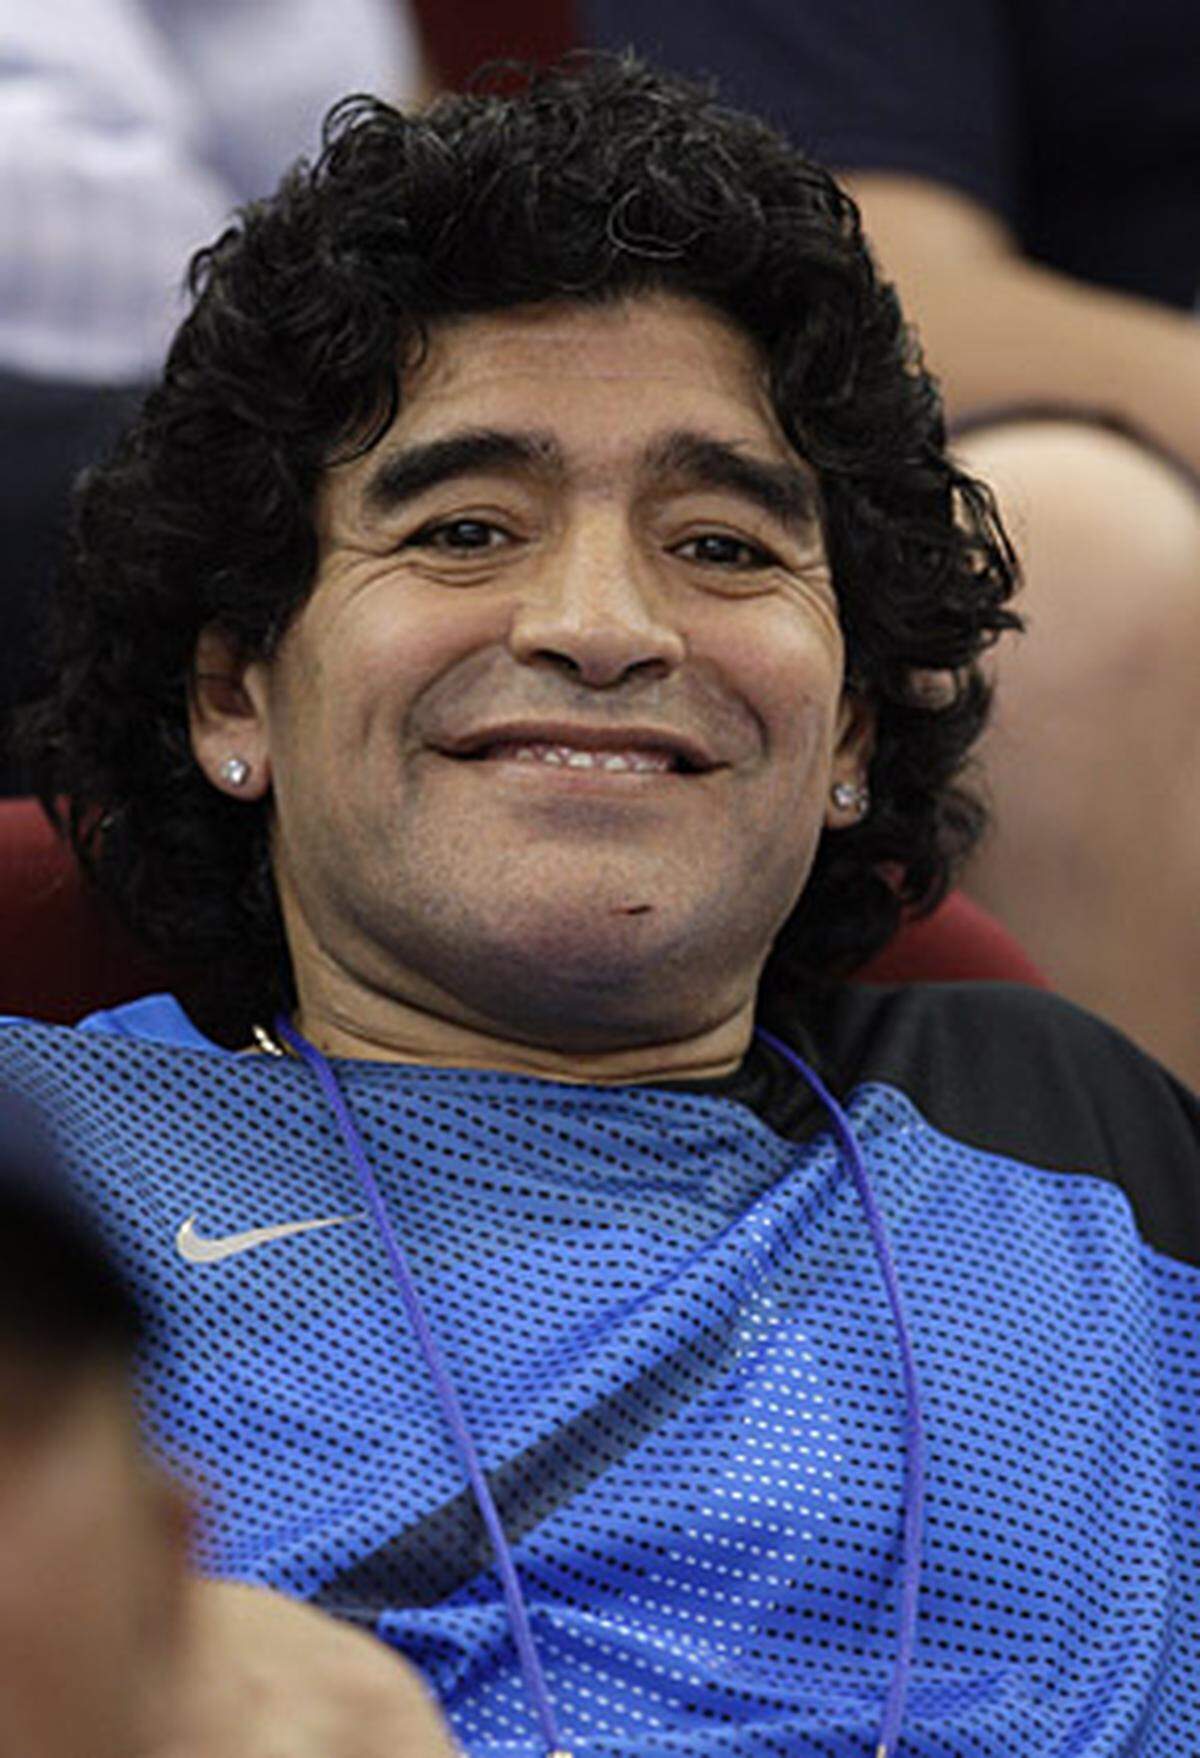 Ende Oktober 2008 wurde Diego Maradona eine hohe Ehre zuteil: Wenige Tage vor seinem 48. Geburtstag wurde er zum neuen Nationaltrainer Argentiniens auserkoren. Und das, obwohl der "Goldjunge" kein große Erfahrung als Trainer hat: Zweimal hatte er sich erfolglos als Trainer argentinischer Zweitligisten versucht.